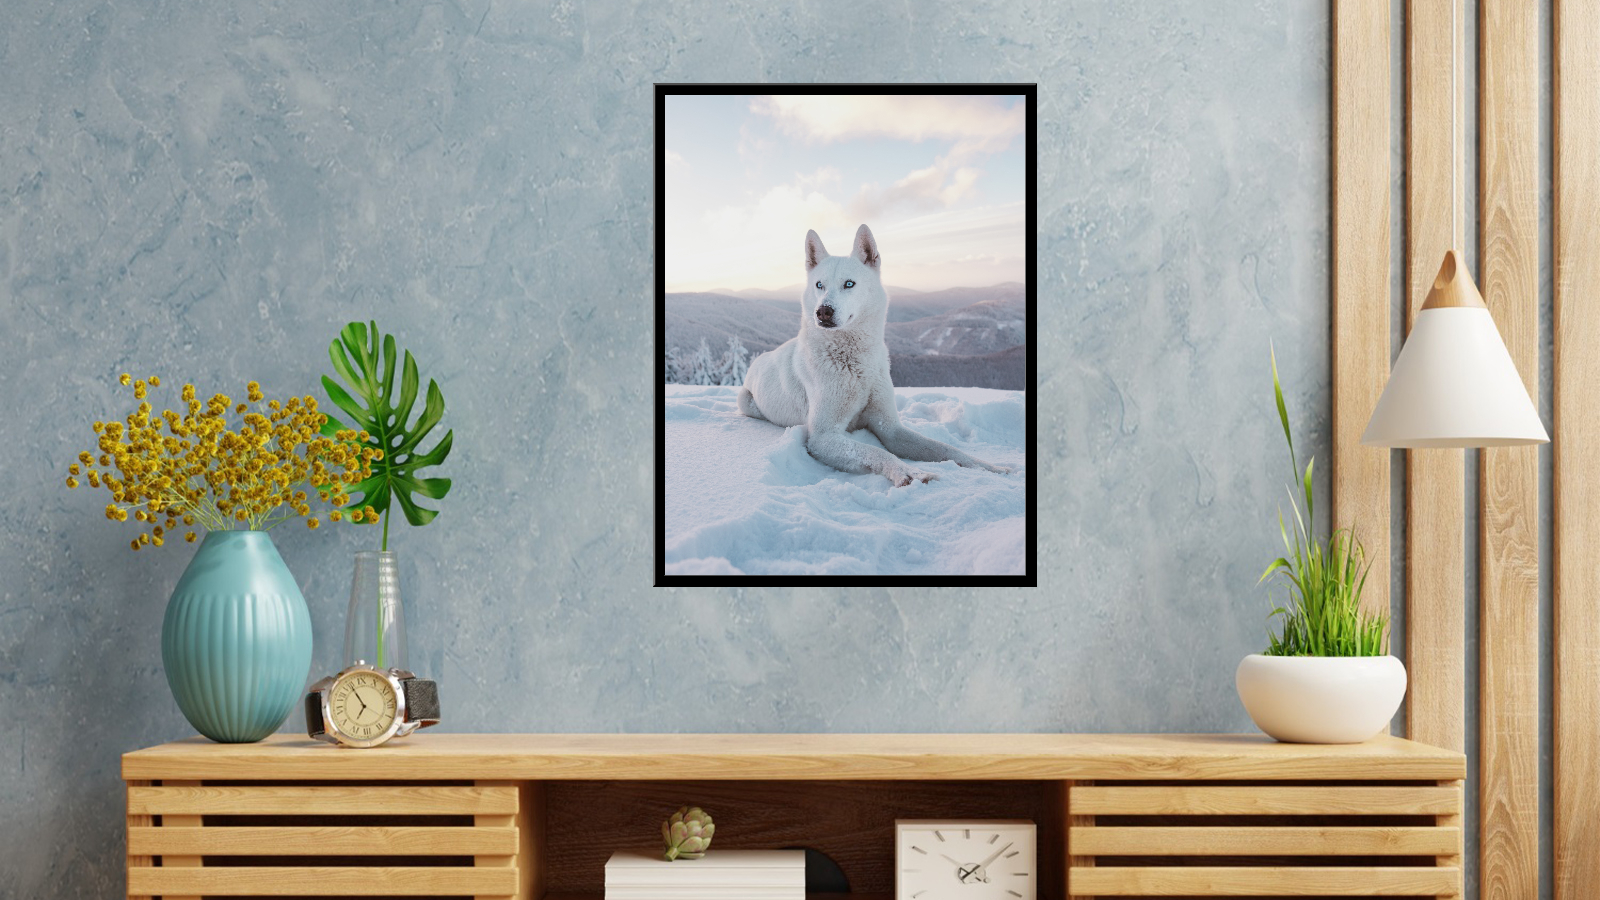 Snow-White Dog